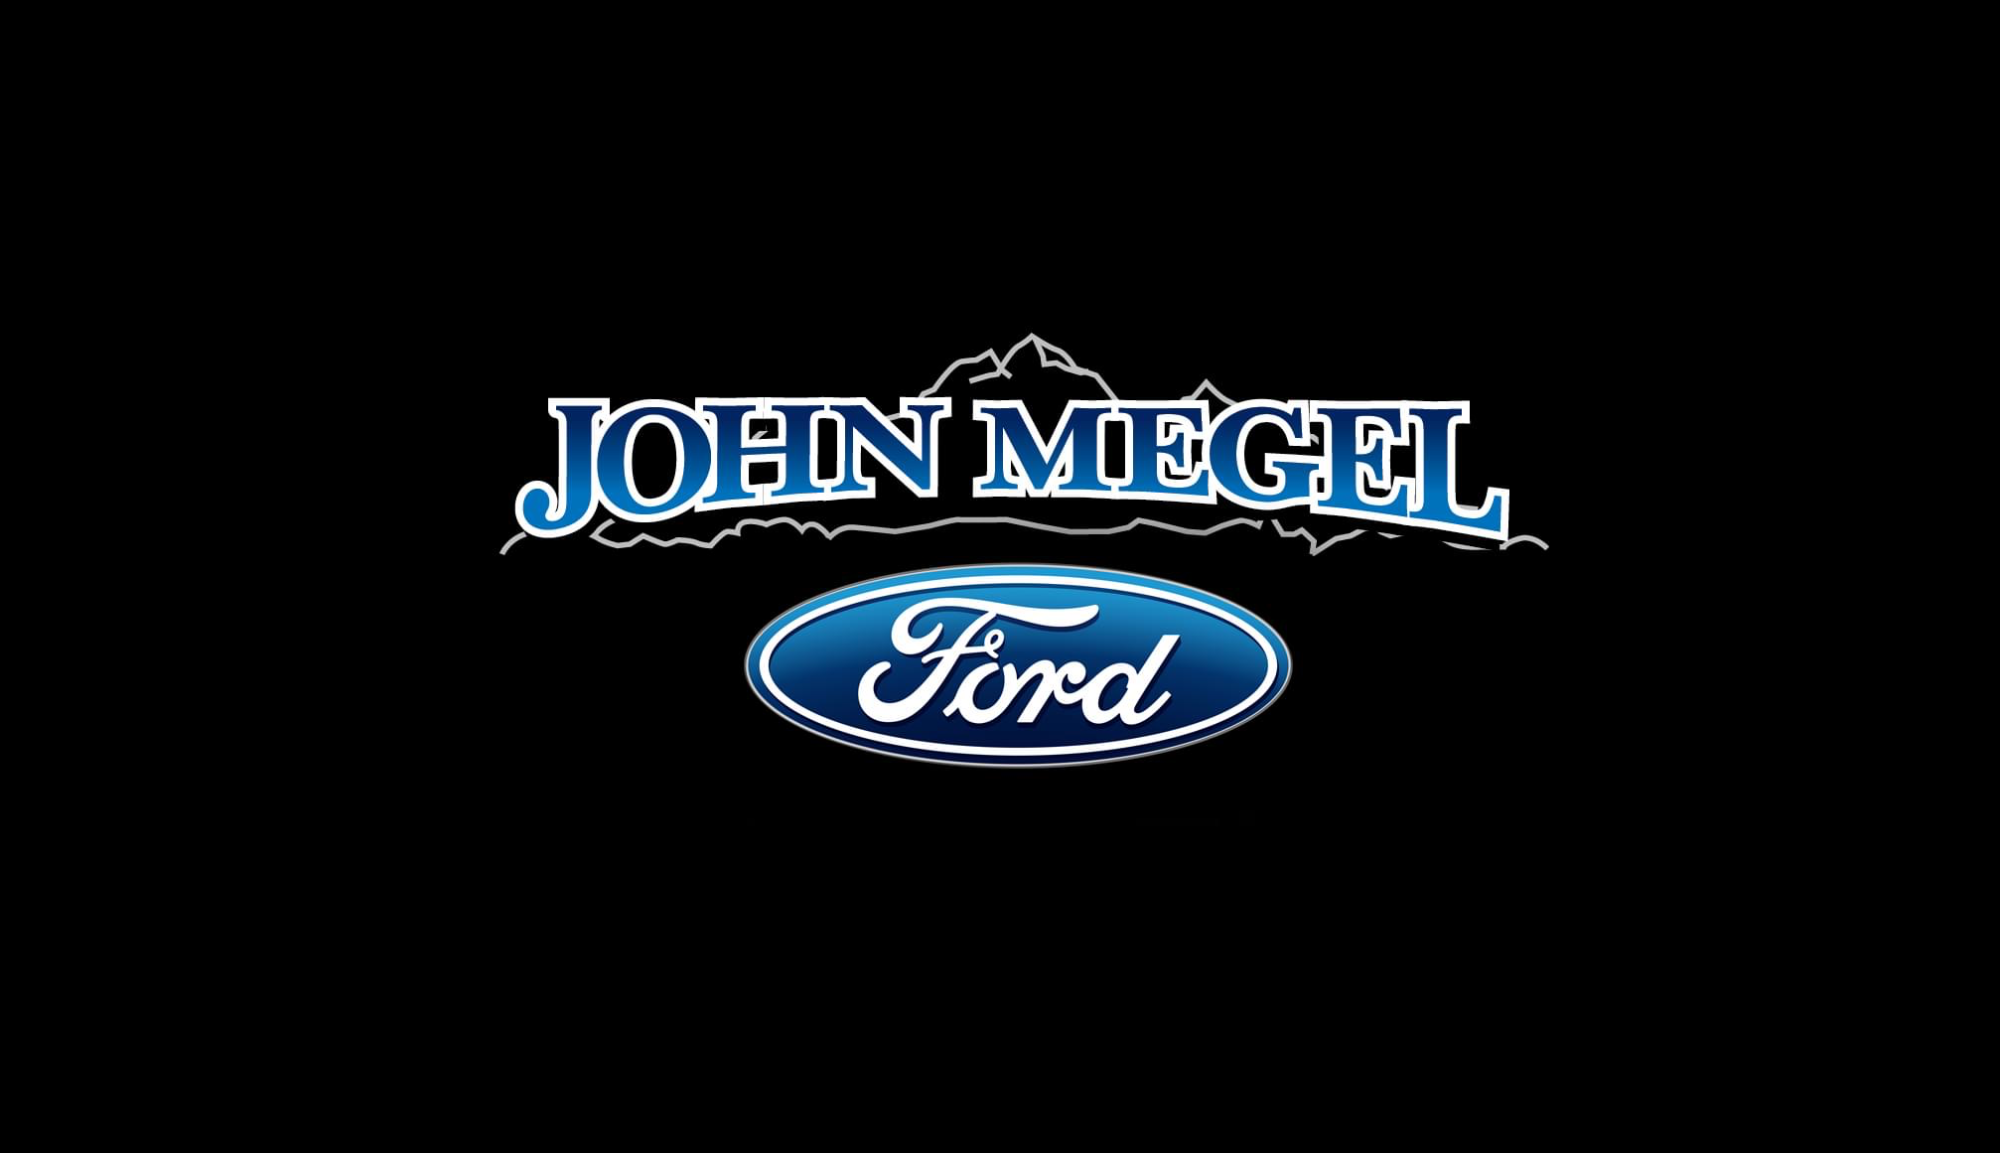 John Megal Ford 